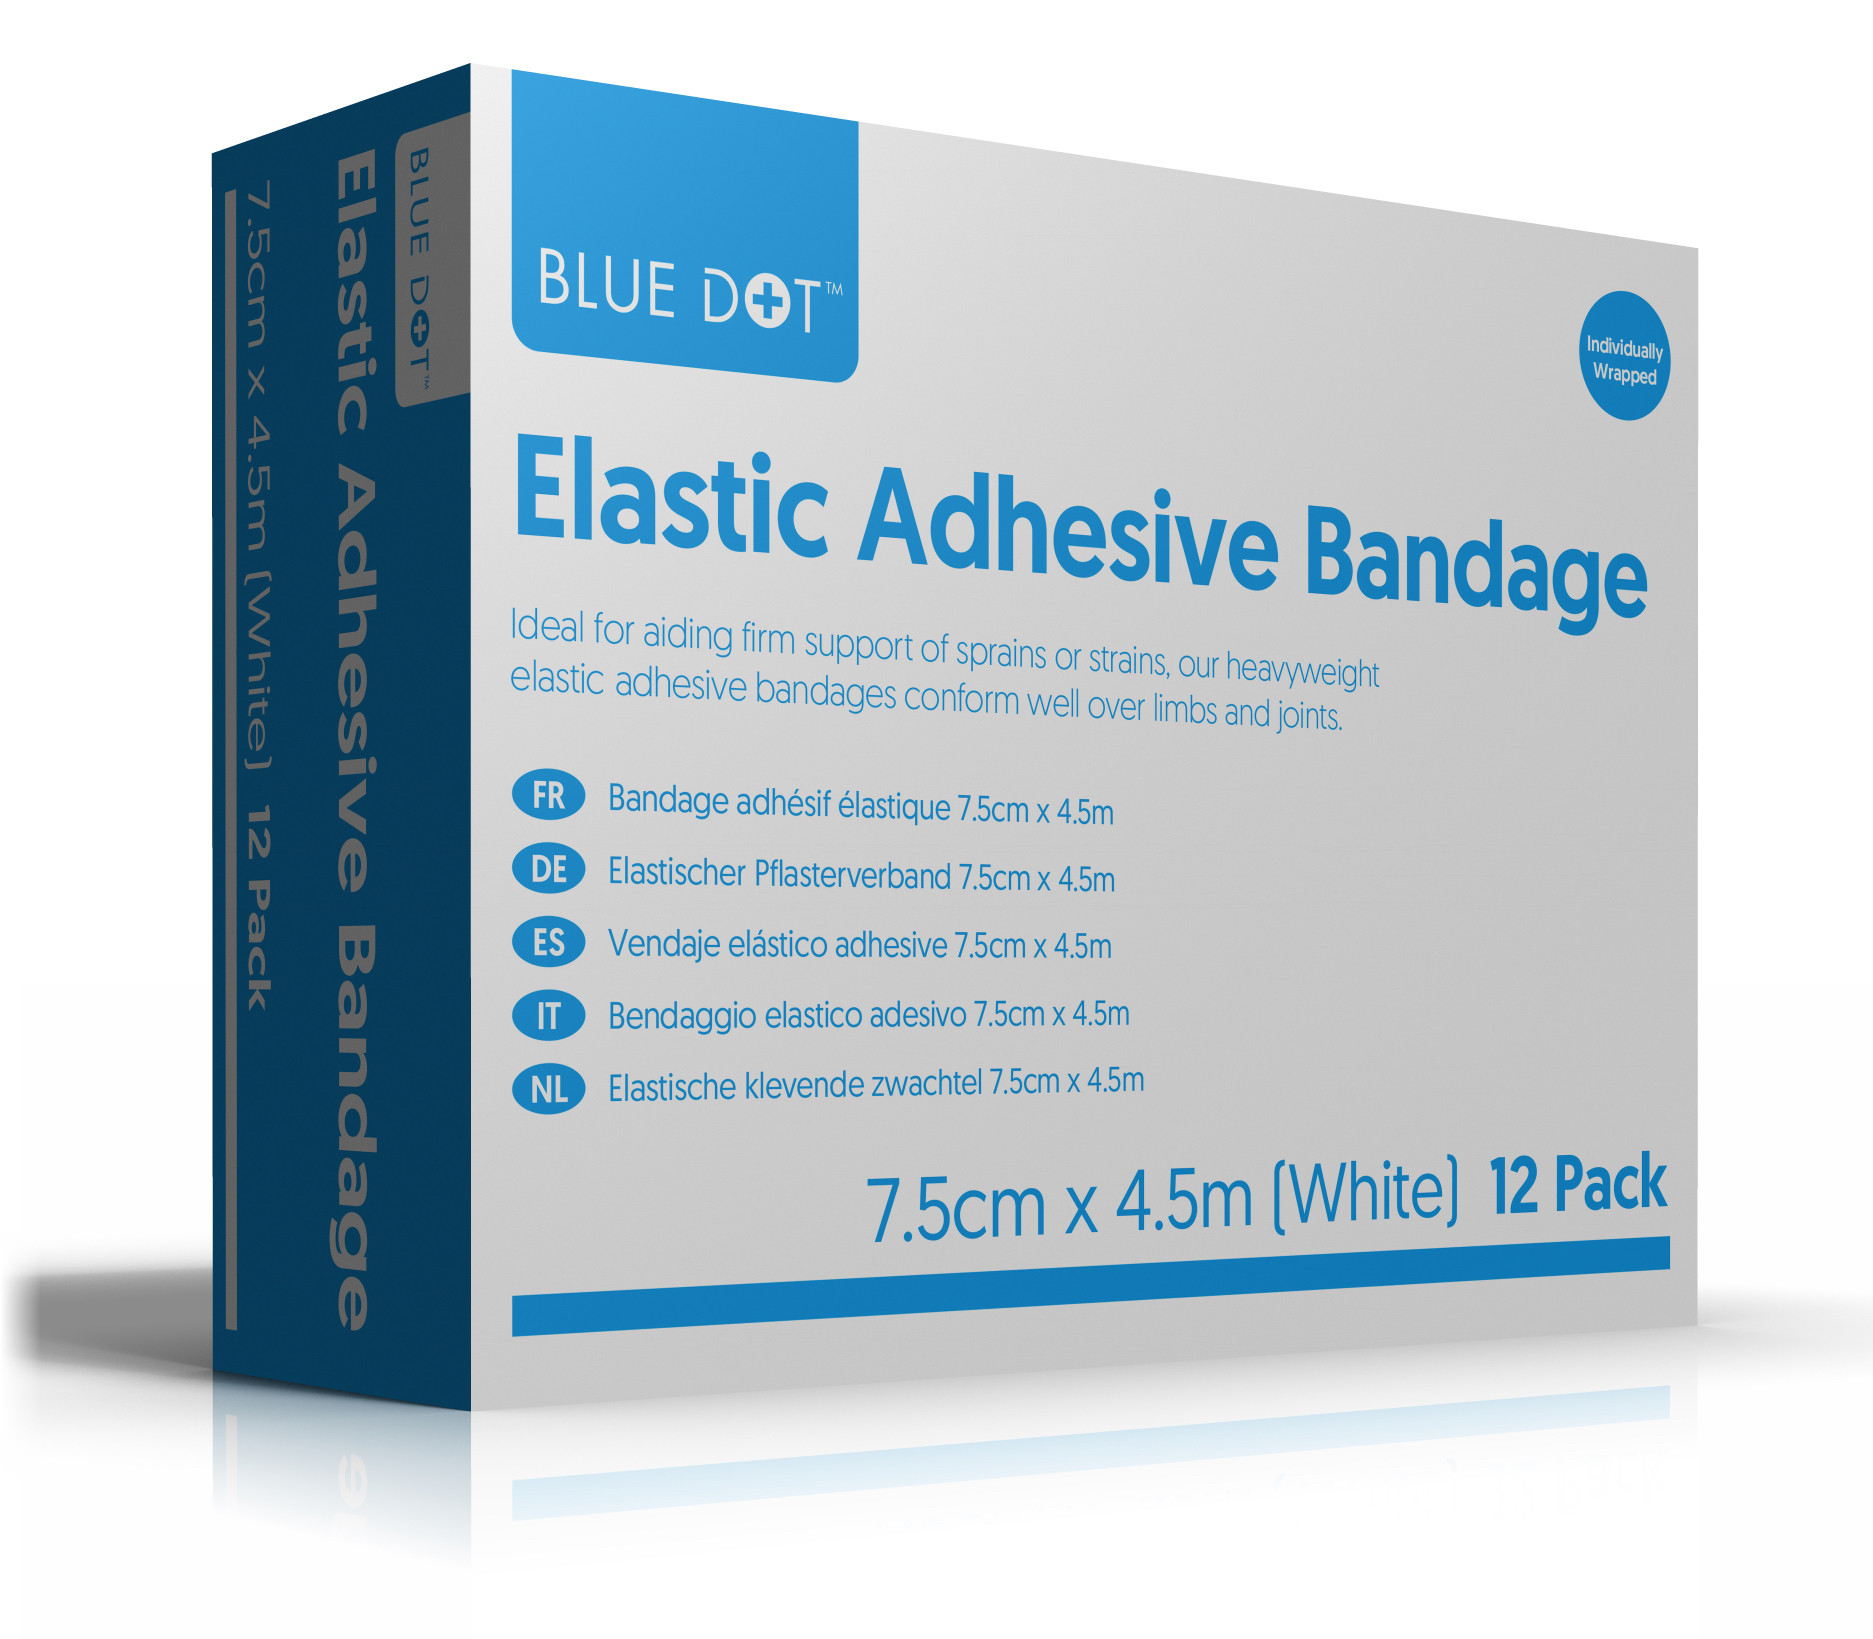 Elastic Adhesive Bandages